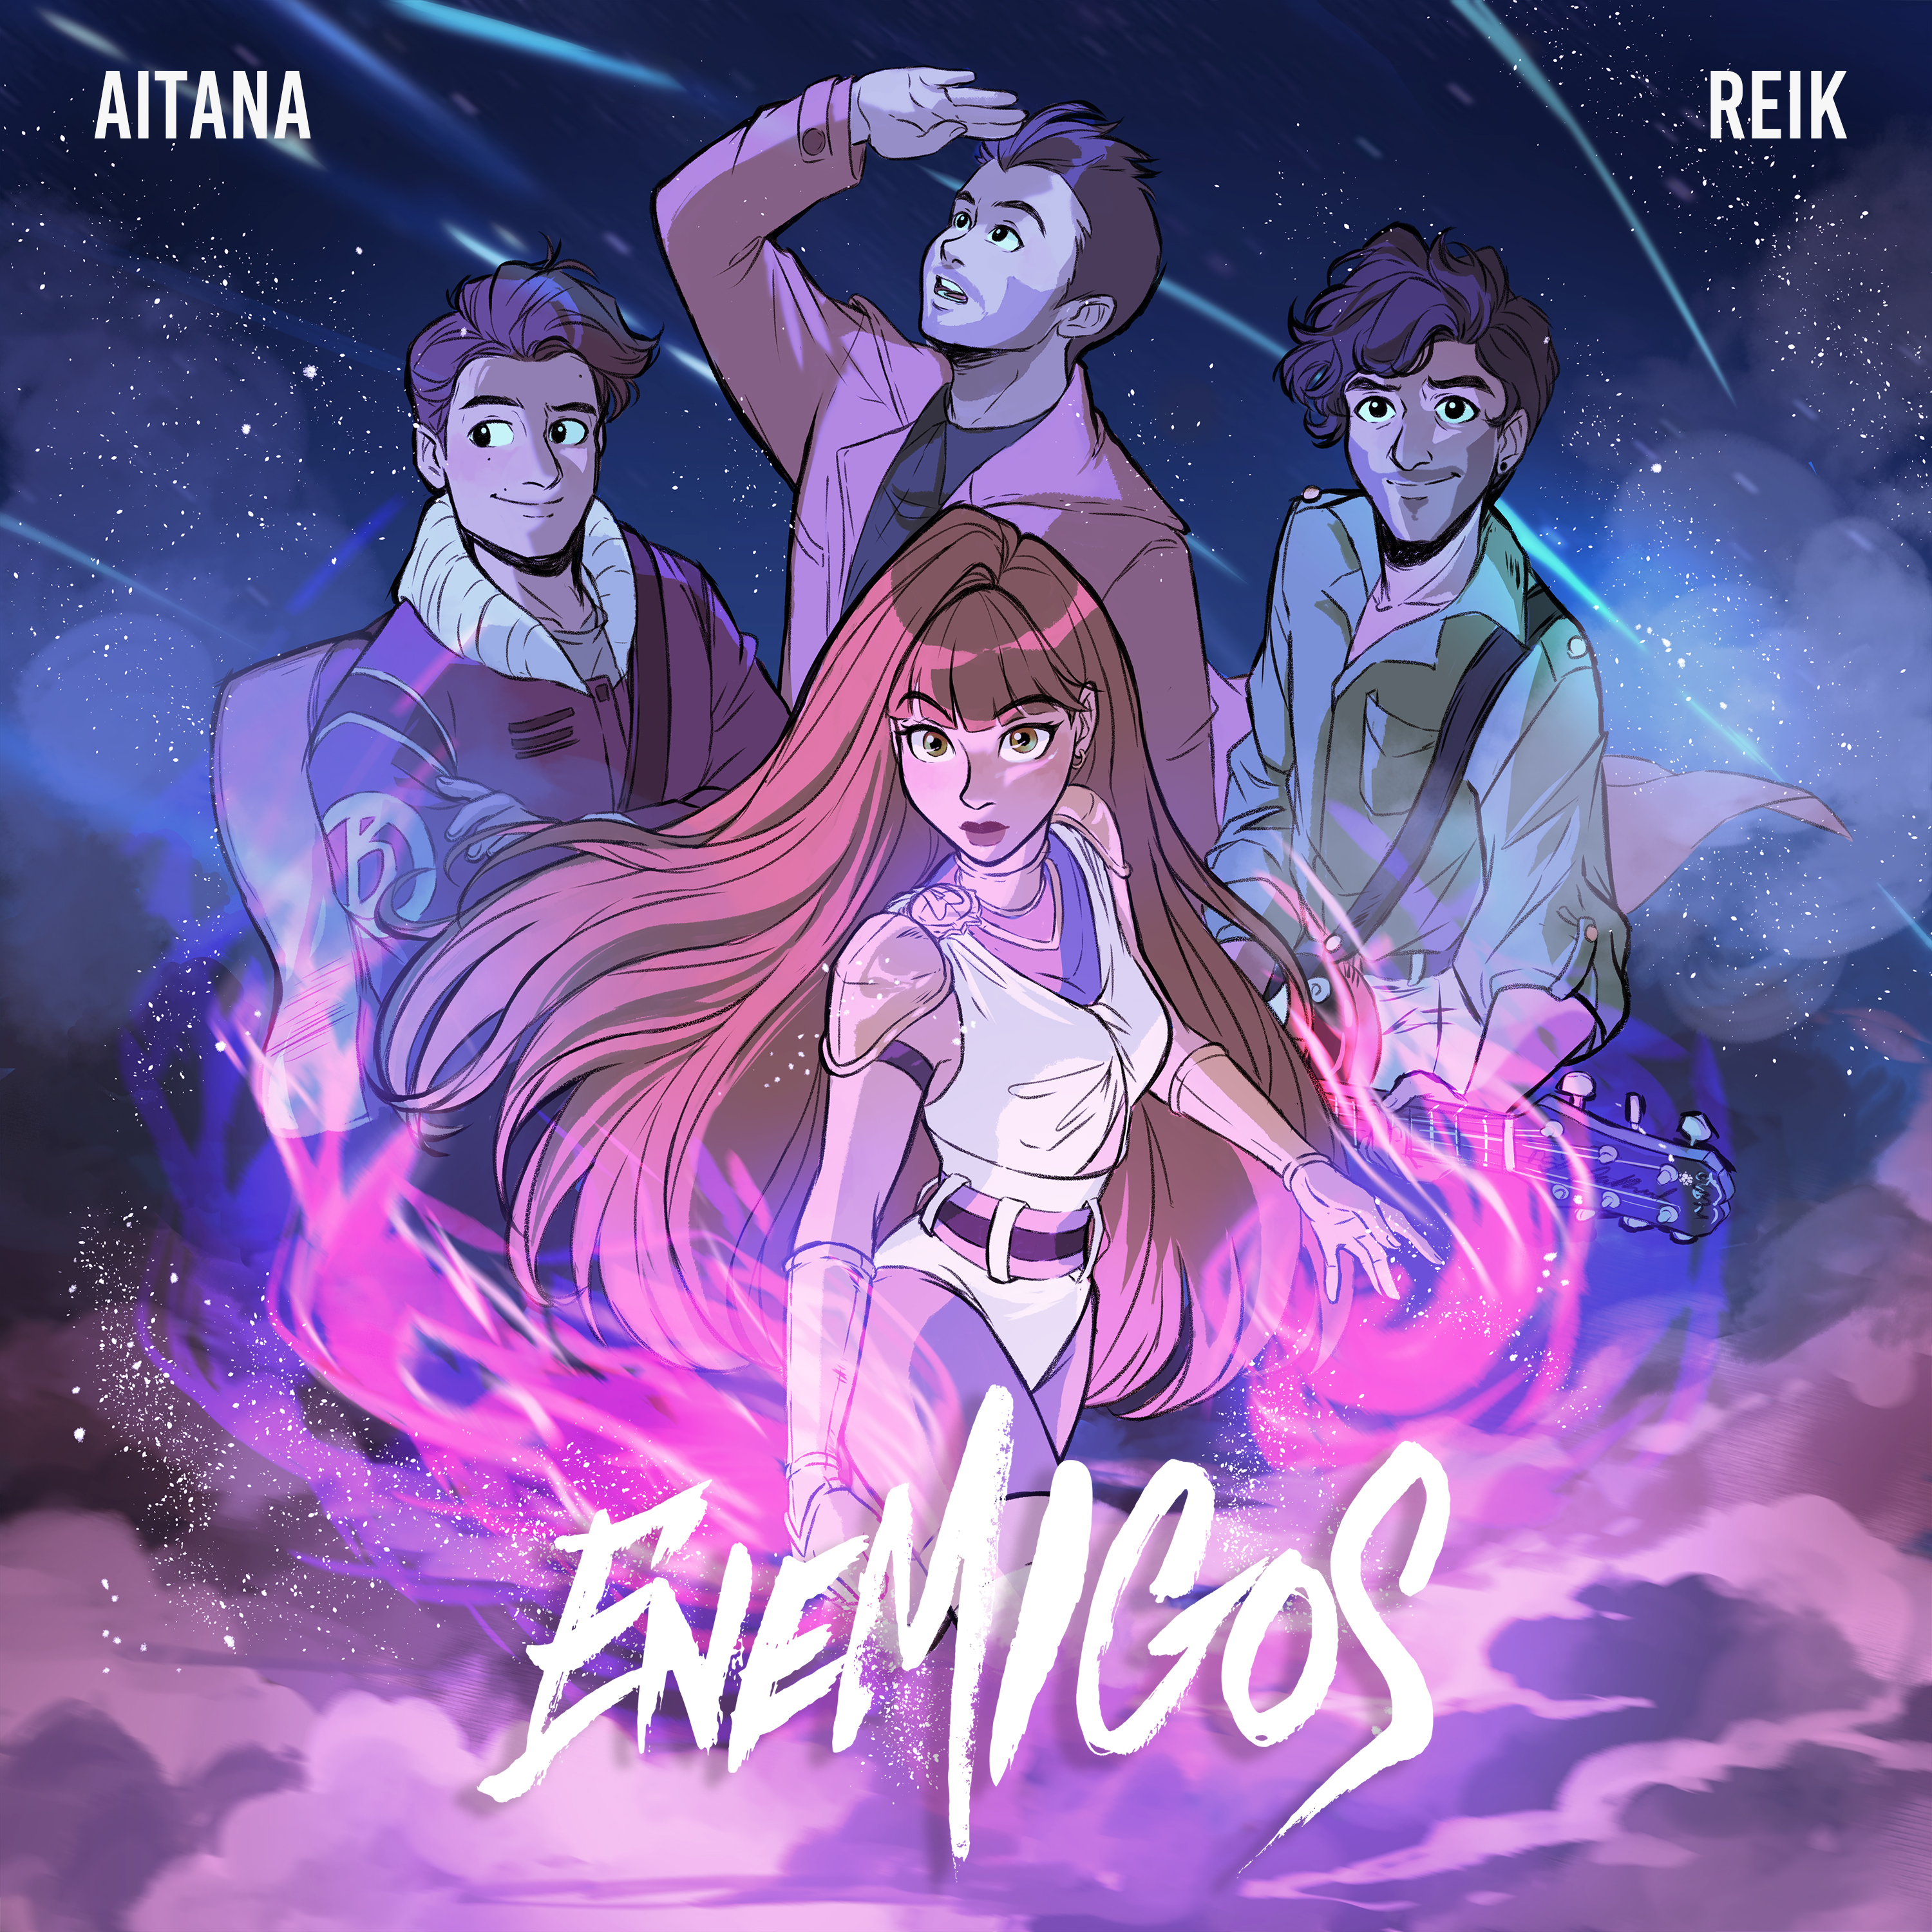 Convertida en personaje de manga, Aitana estrenó “Enemigos”, su nueva canción junto a Reik